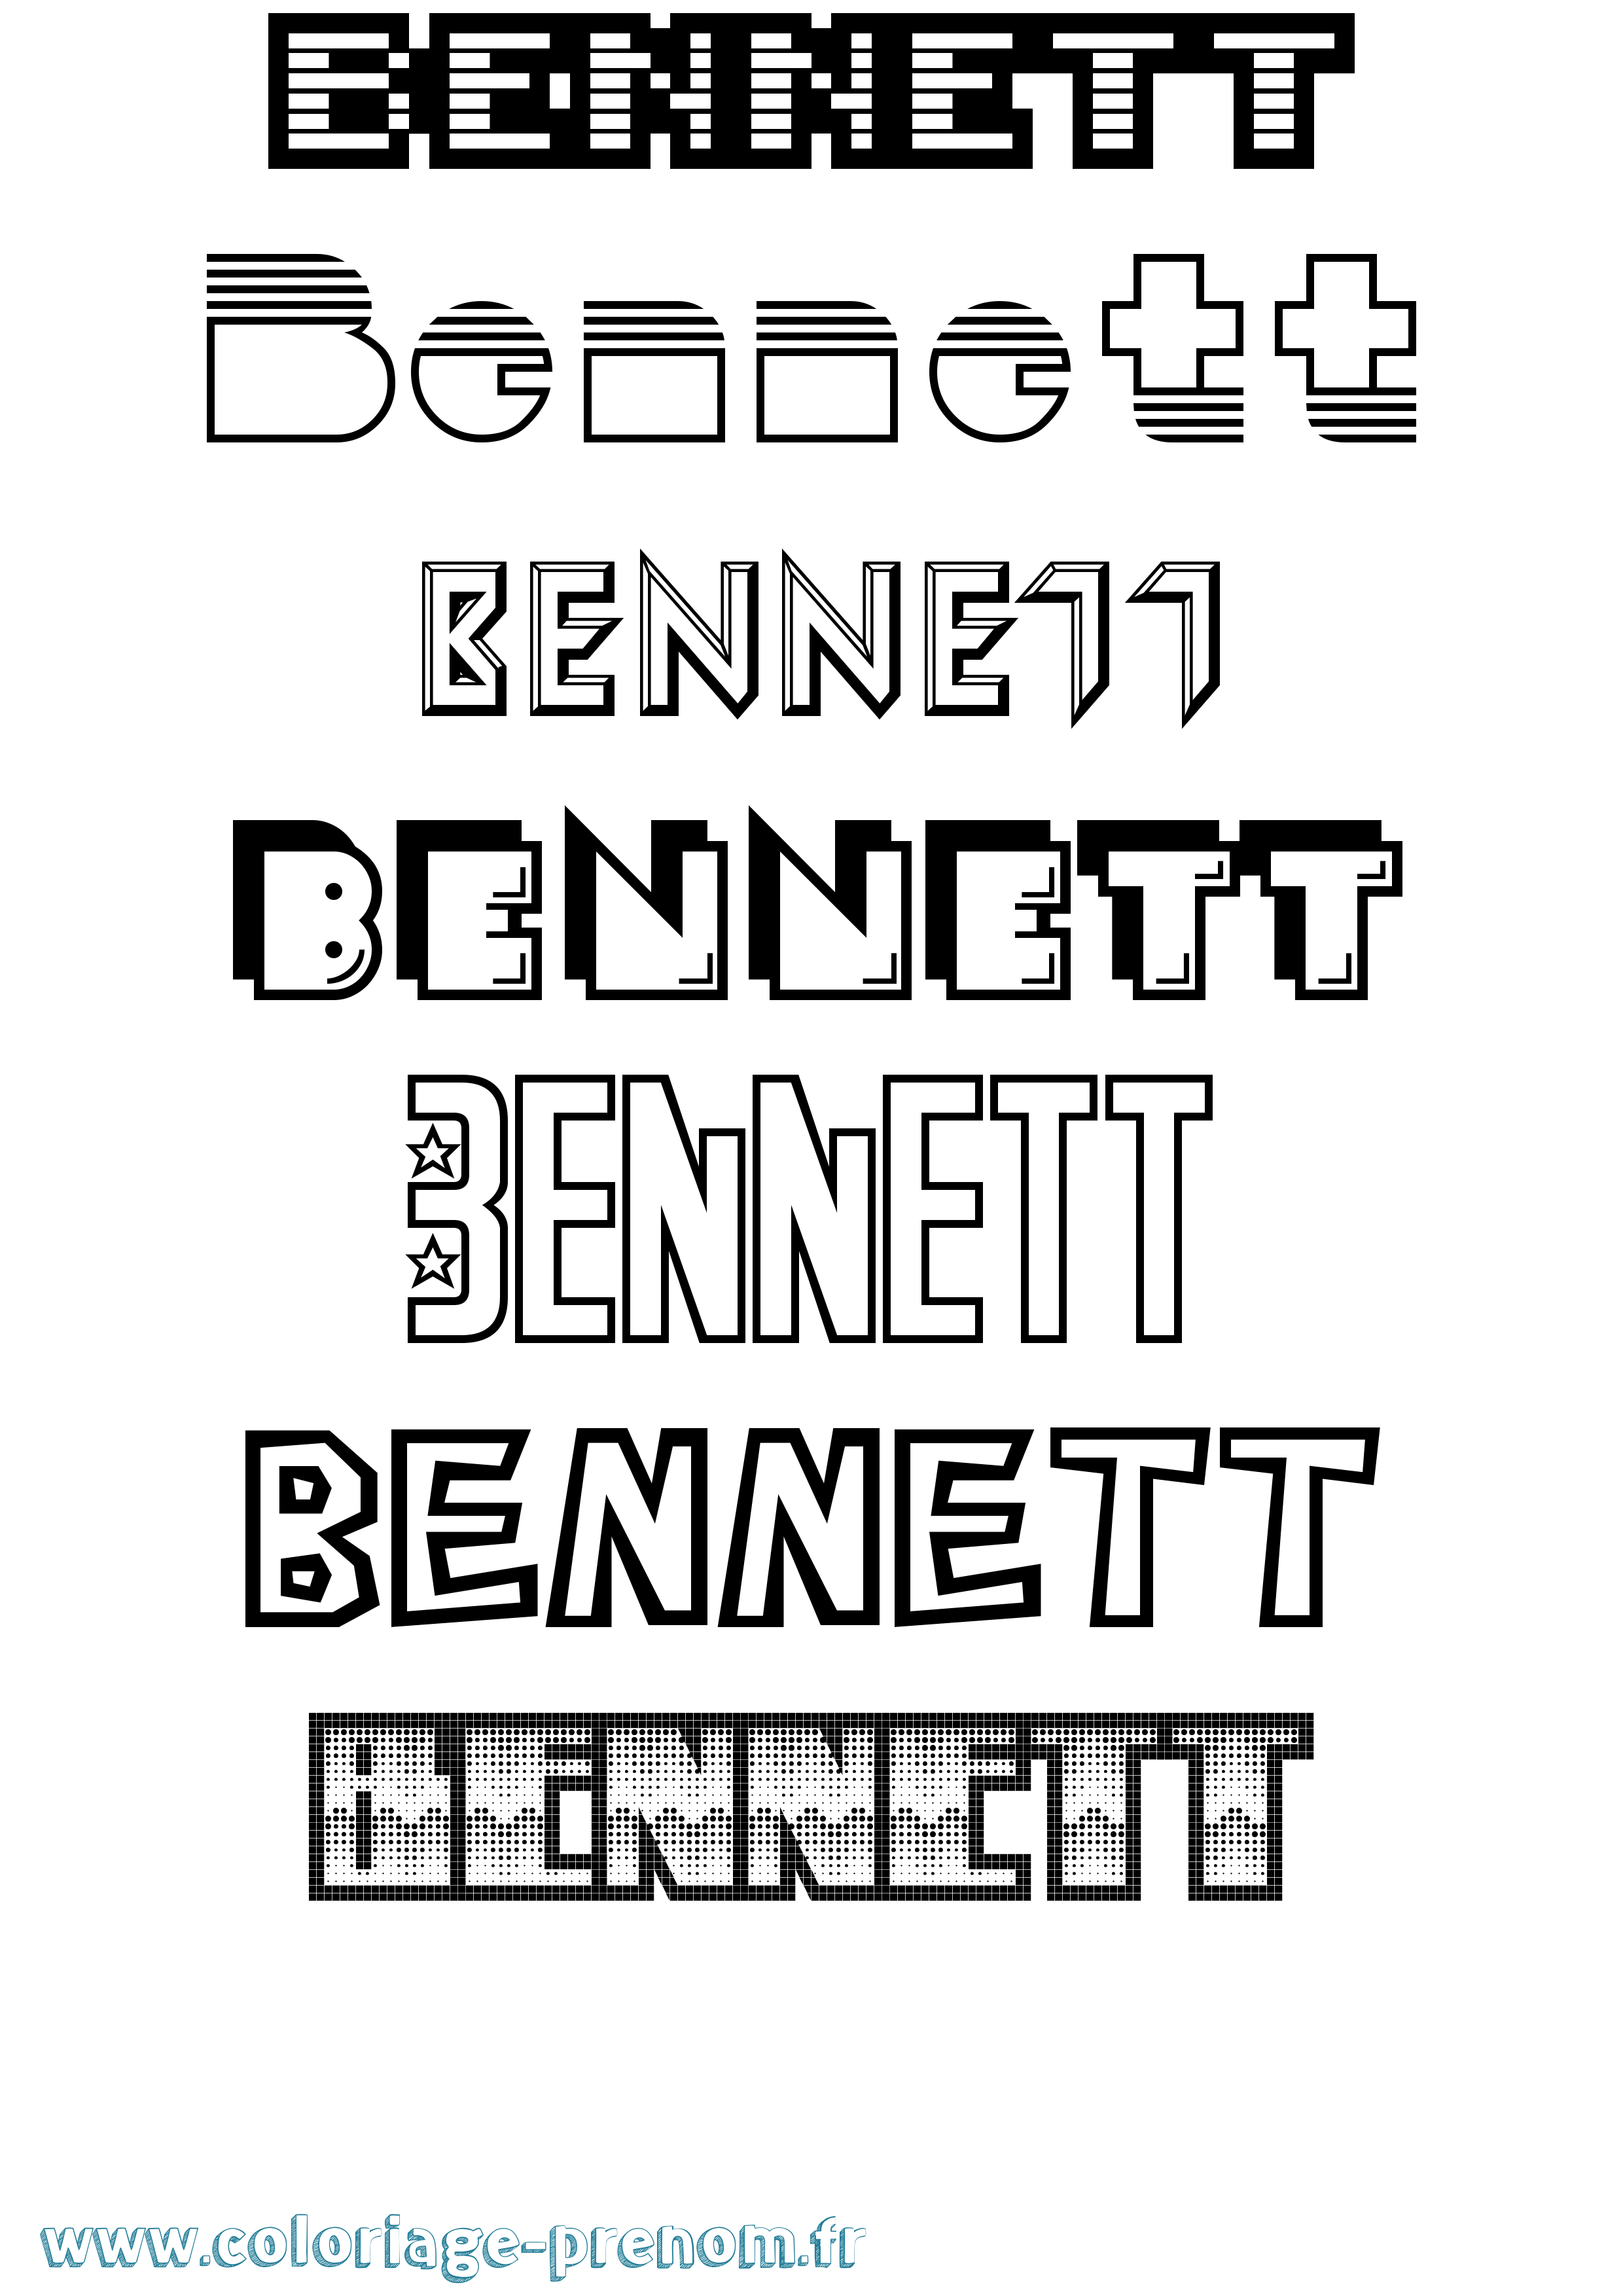 Coloriage prénom Bennett Jeux Vidéos